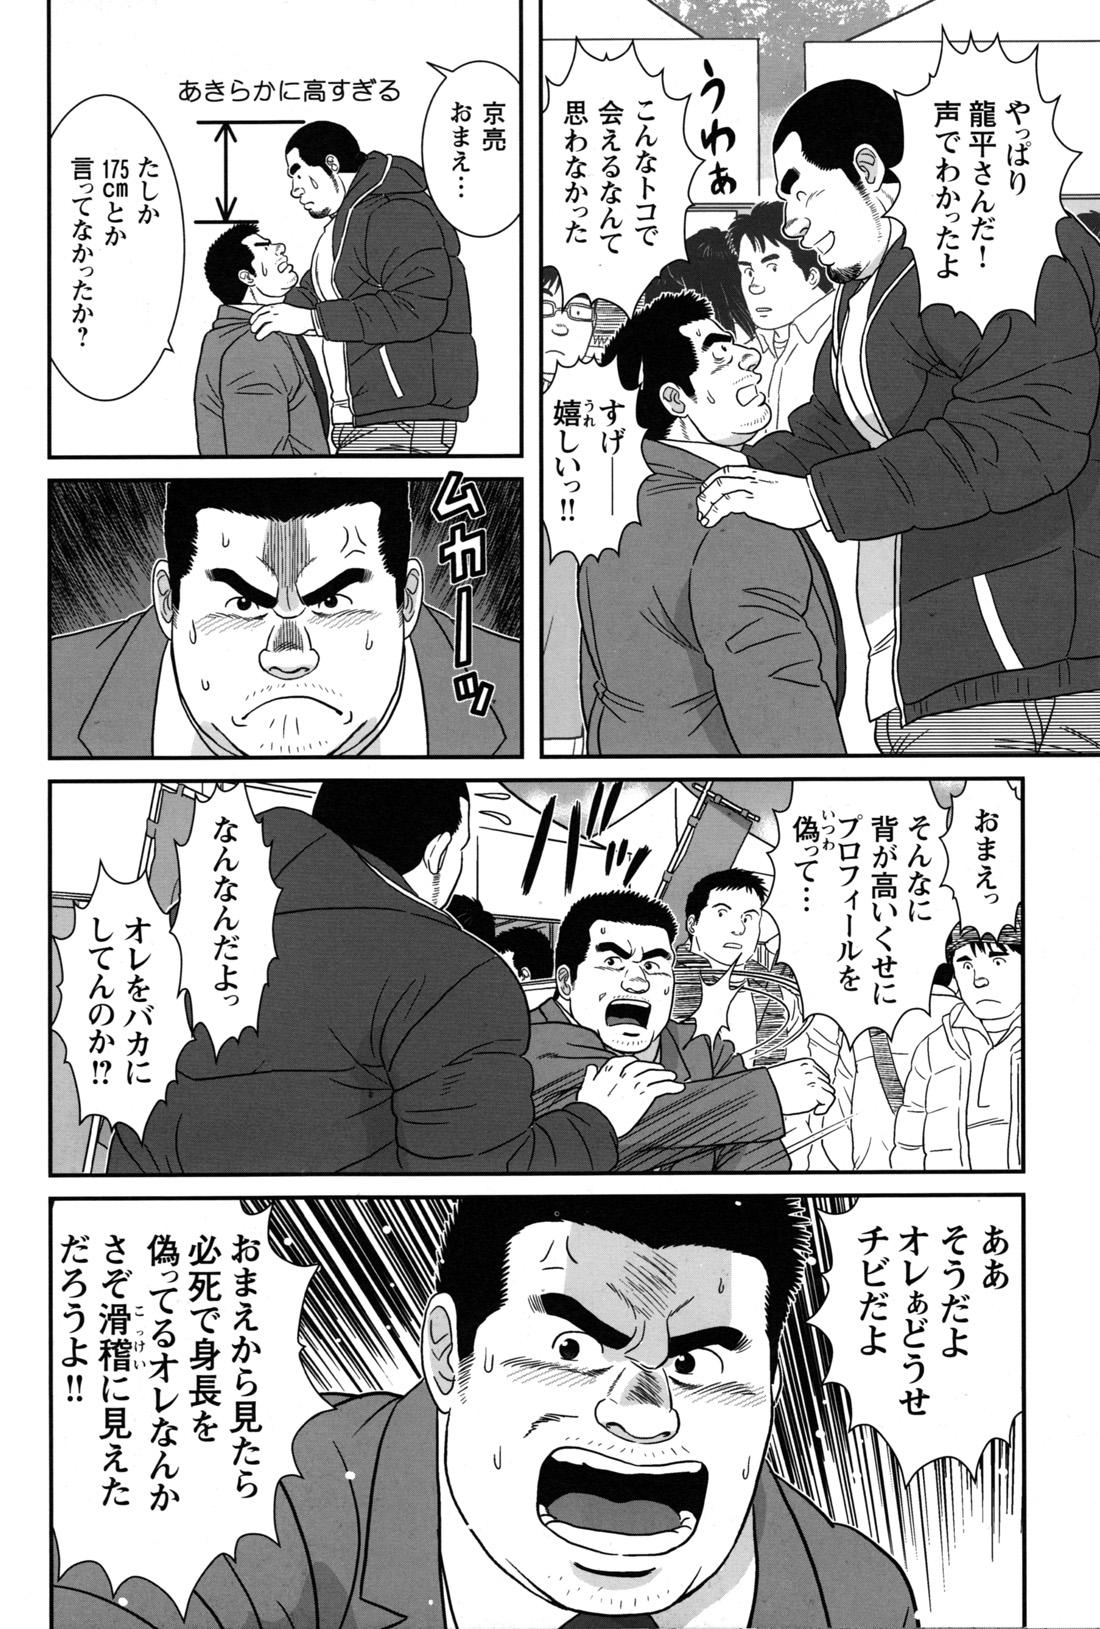 Comic G-men Gaho No.09 Gacchibi Zeme 91